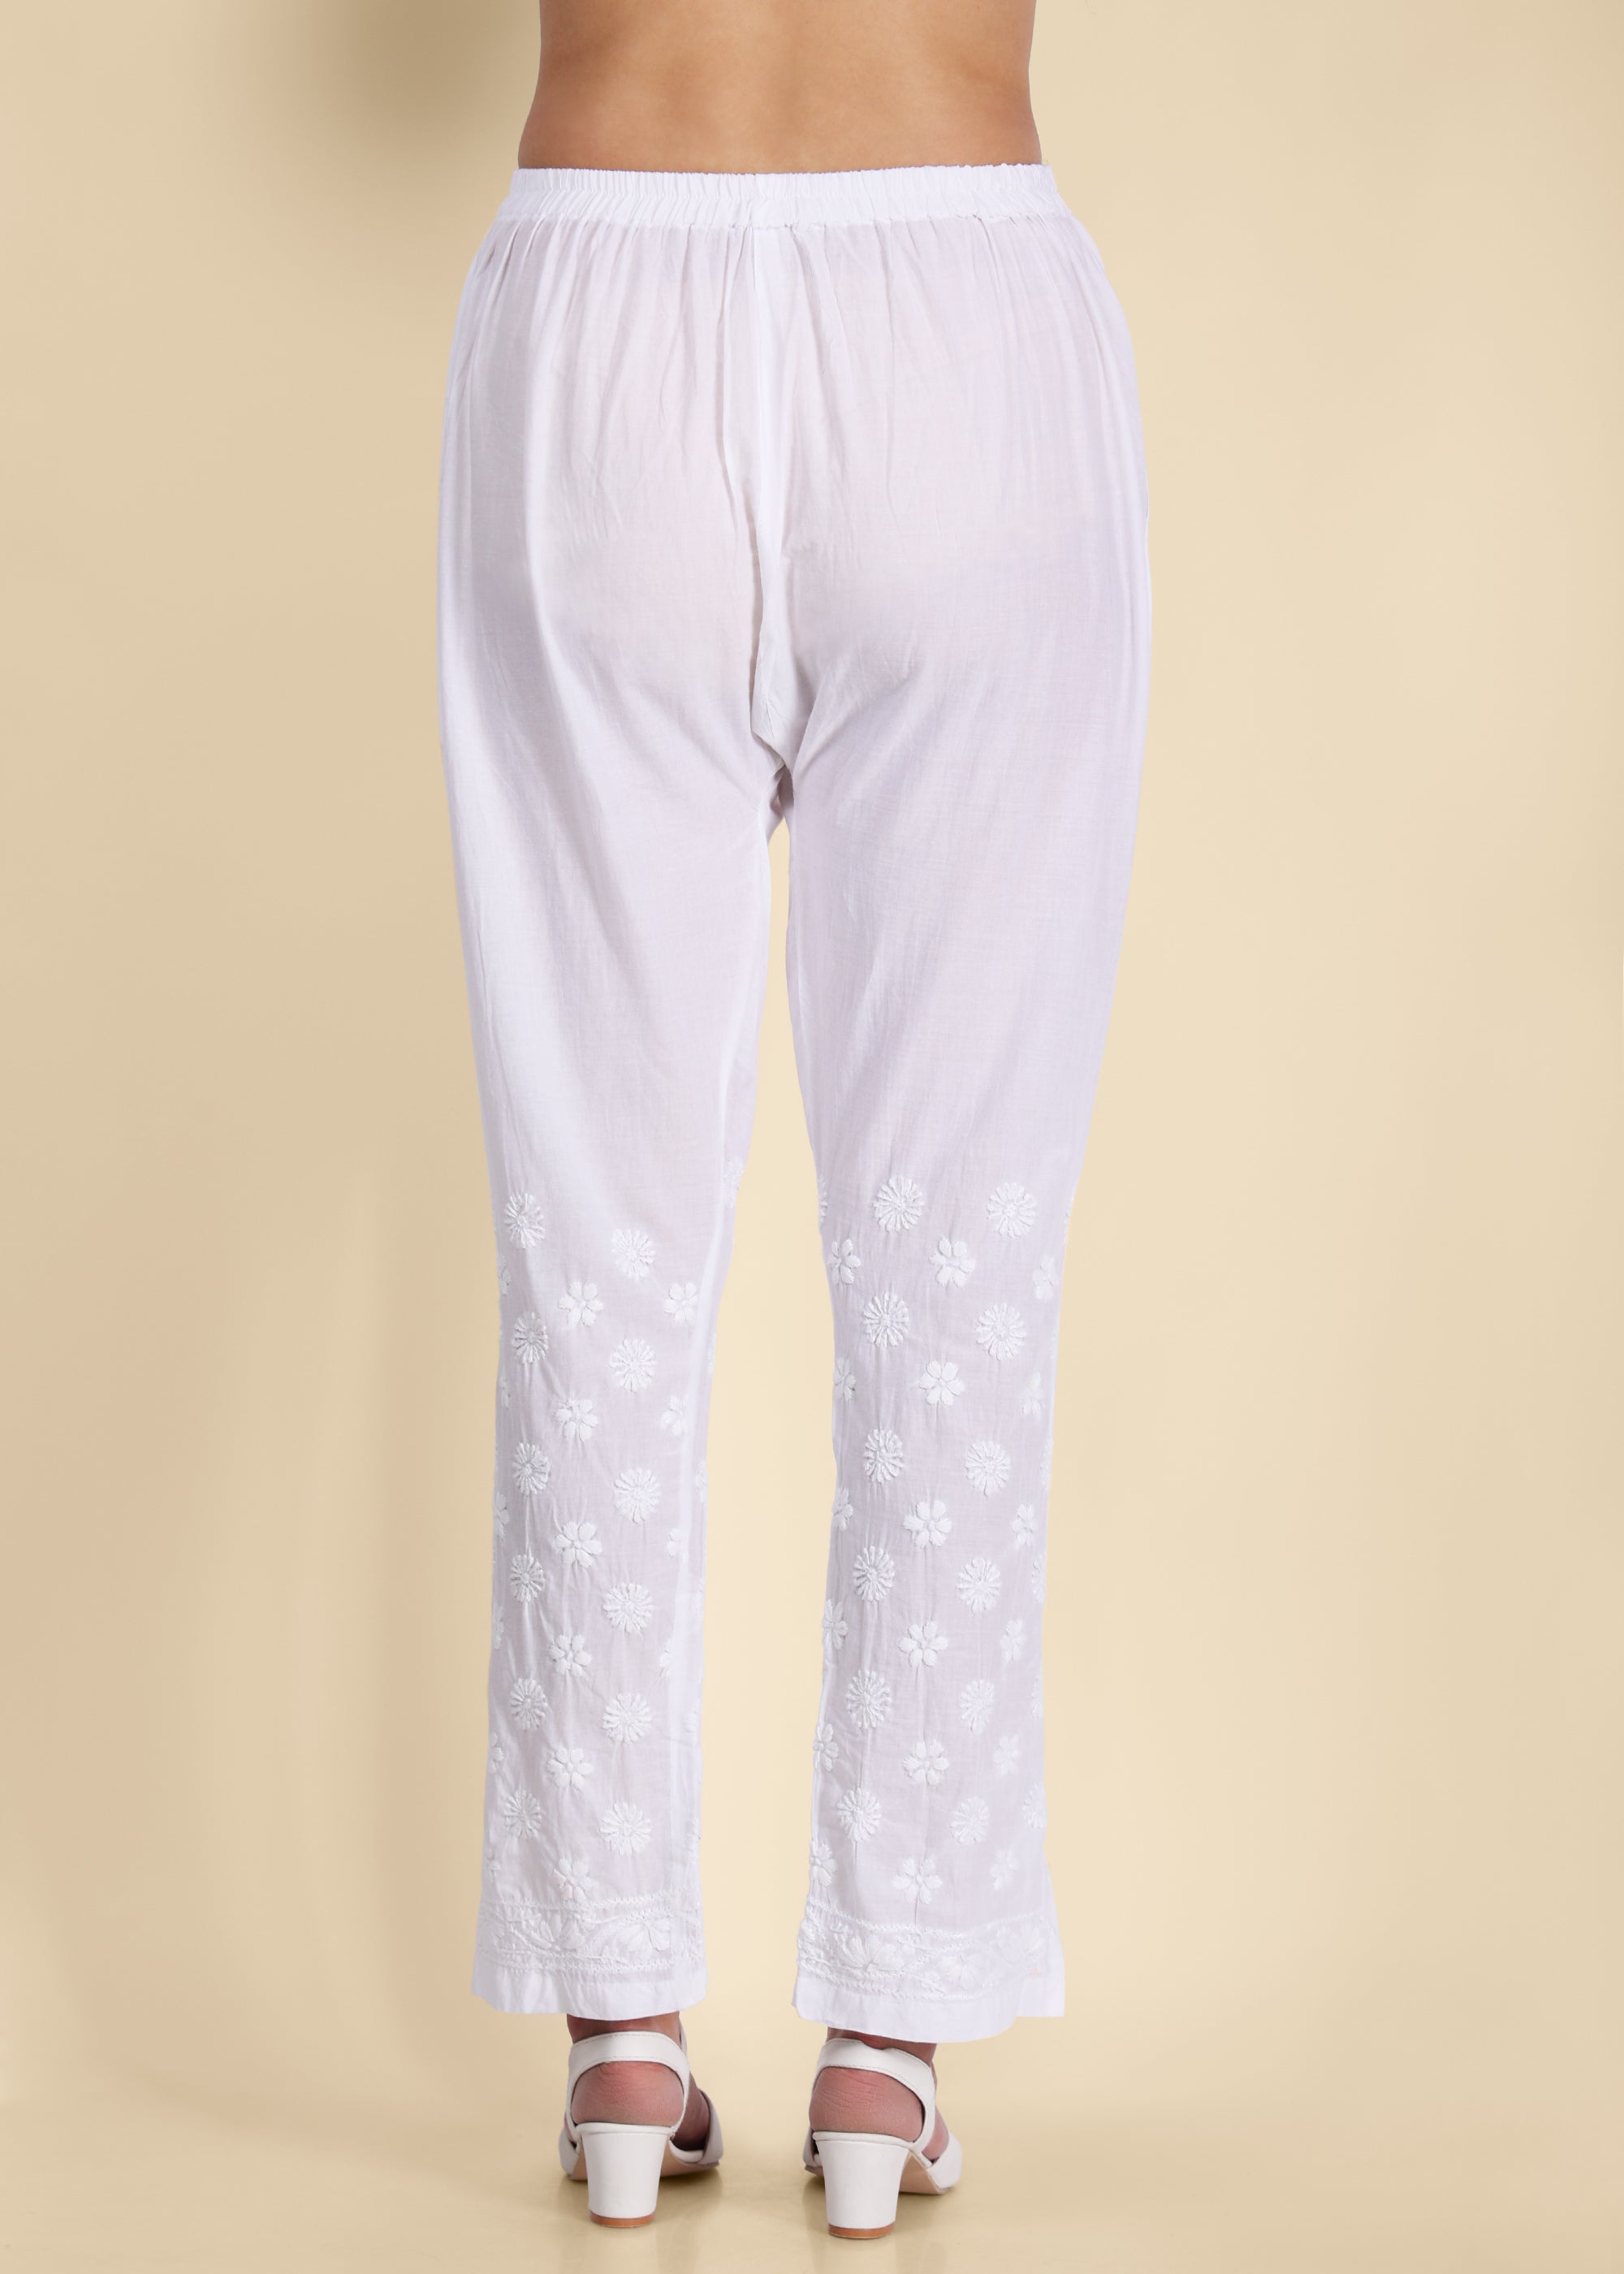 Shop Pants for Women Online | Jaypore